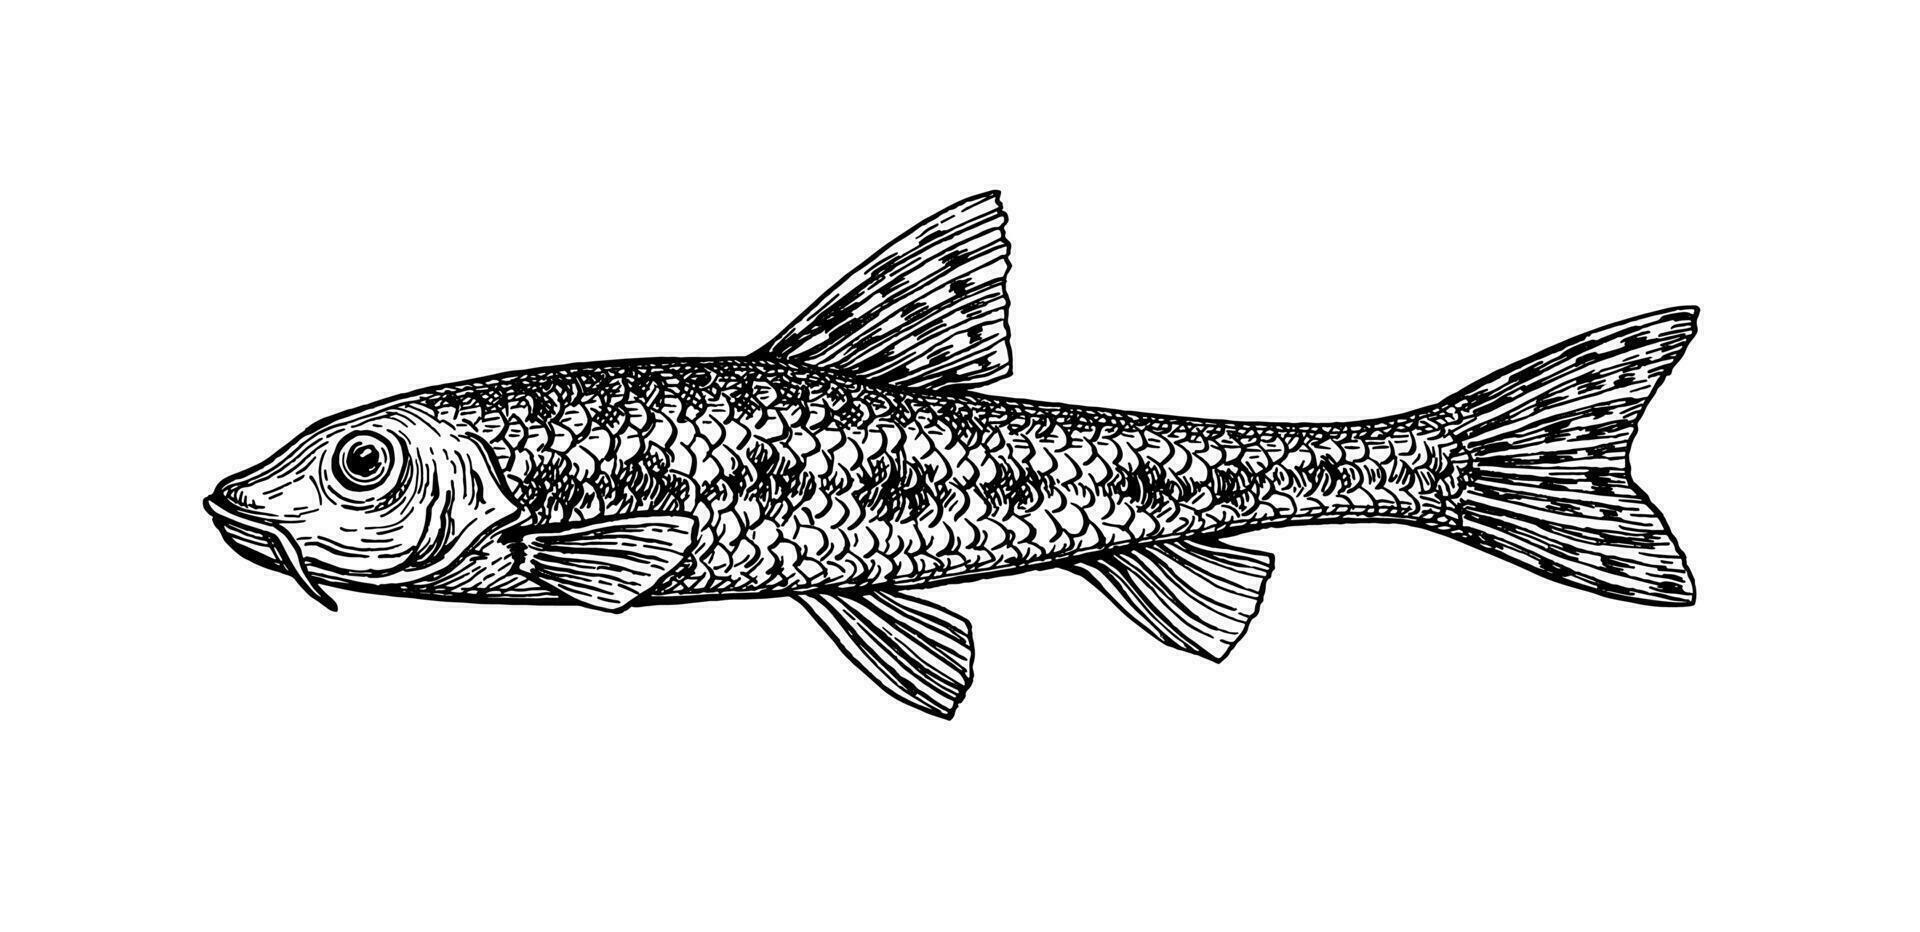 gobio gobio. små sötvatten fisk. bläck skiss isolerat på vit bakgrund. hand dragen vektor illustration. retro stil.